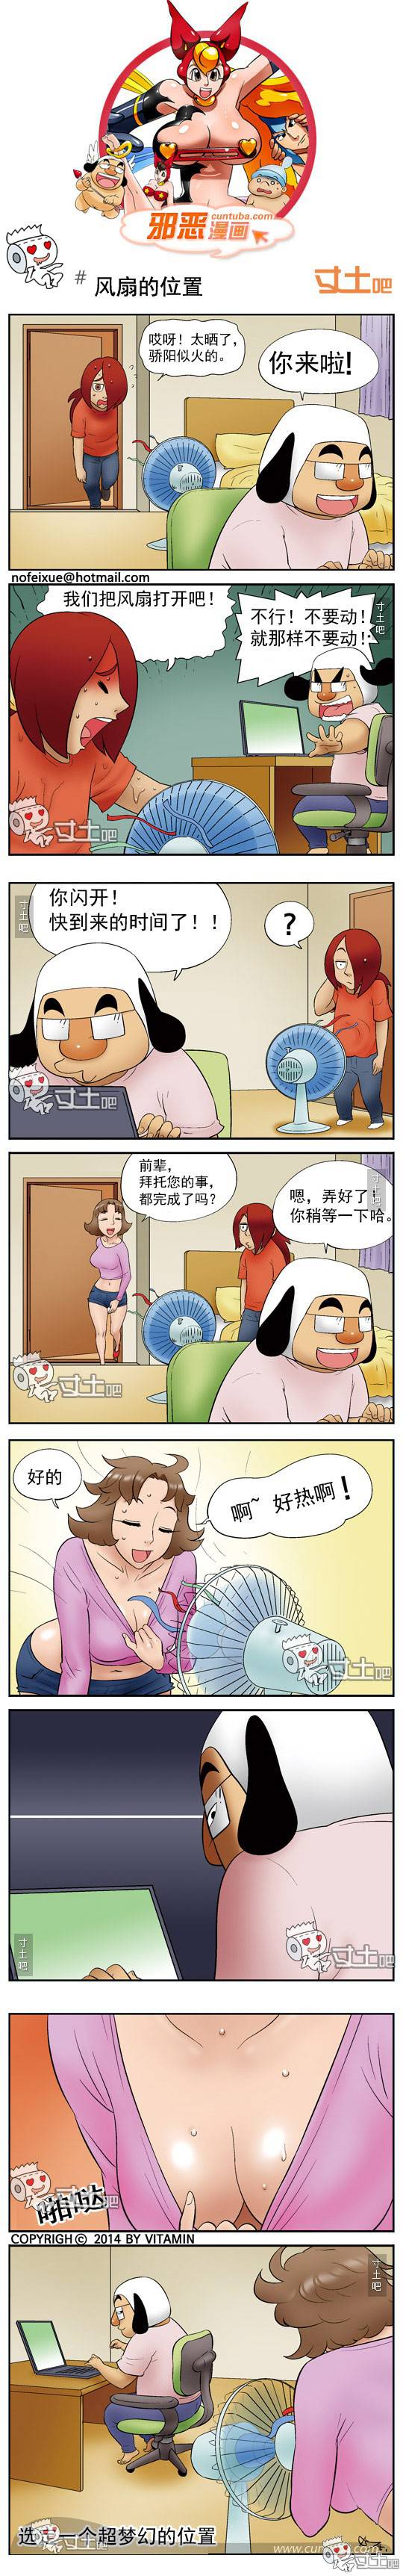 邪恶漫画爆笑囧图第253刊：如此享受的性福